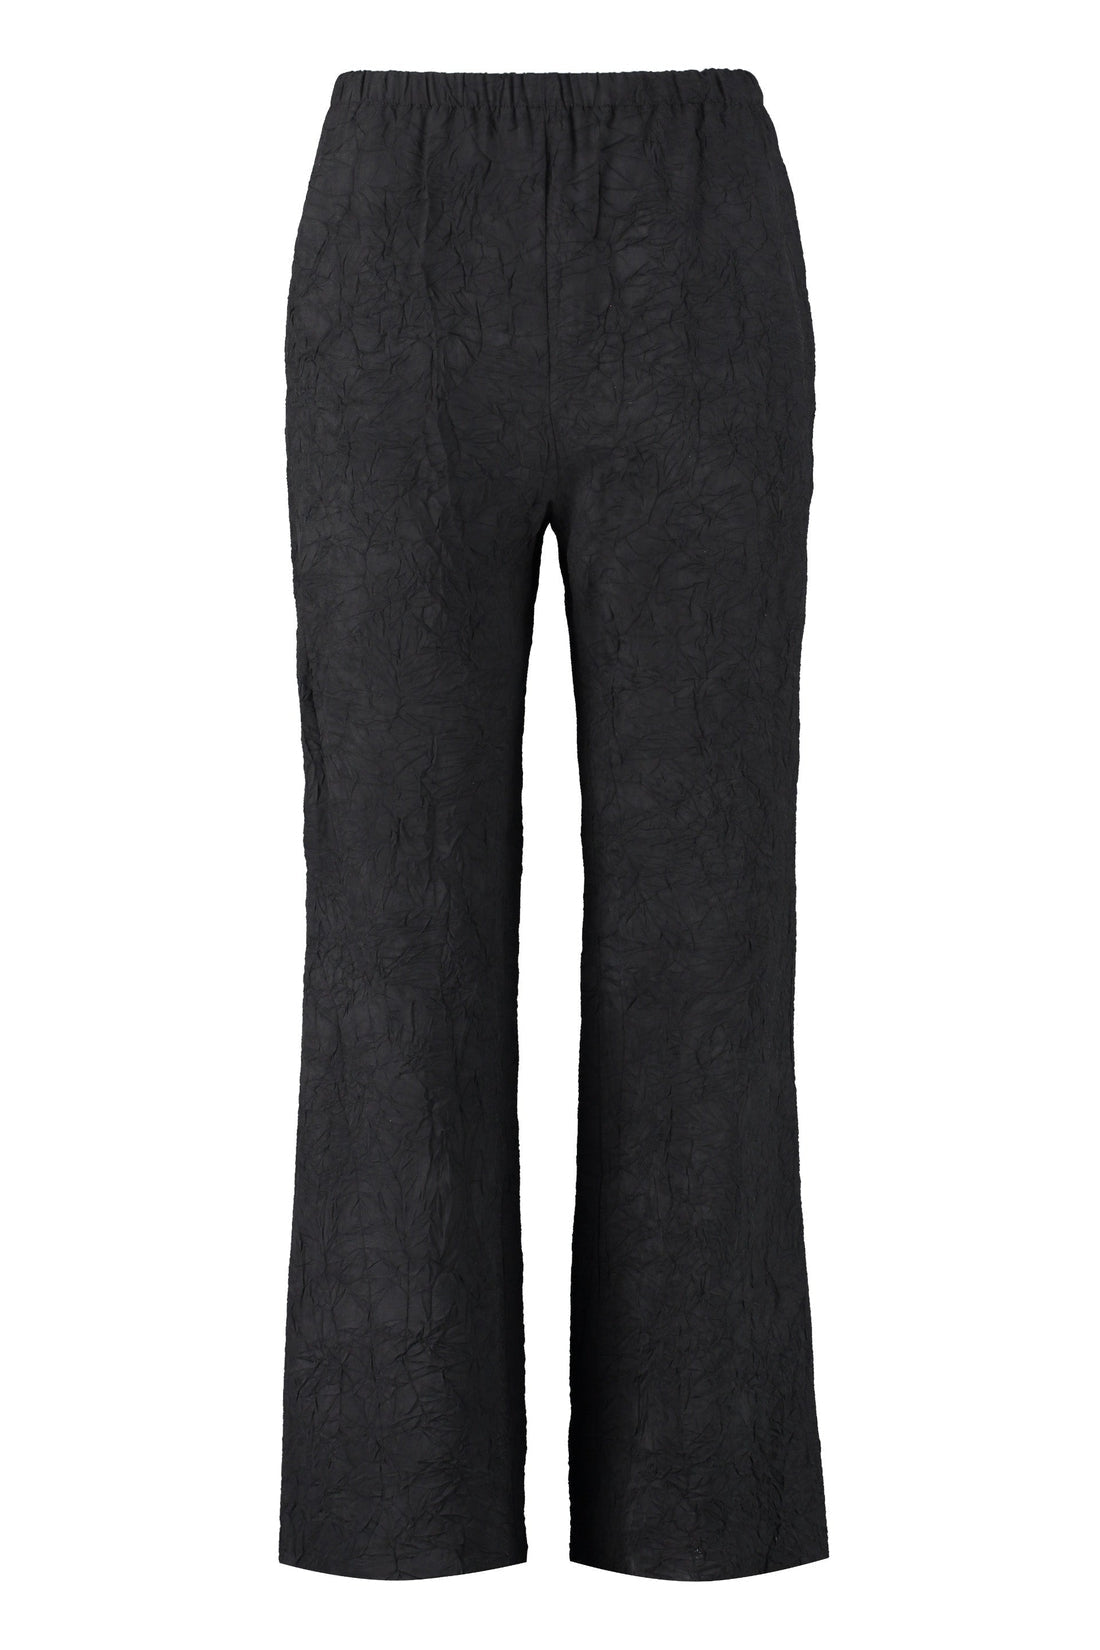 Nanushka-OUTLET-SALE-Lenthe trousers-ARCHIVIST